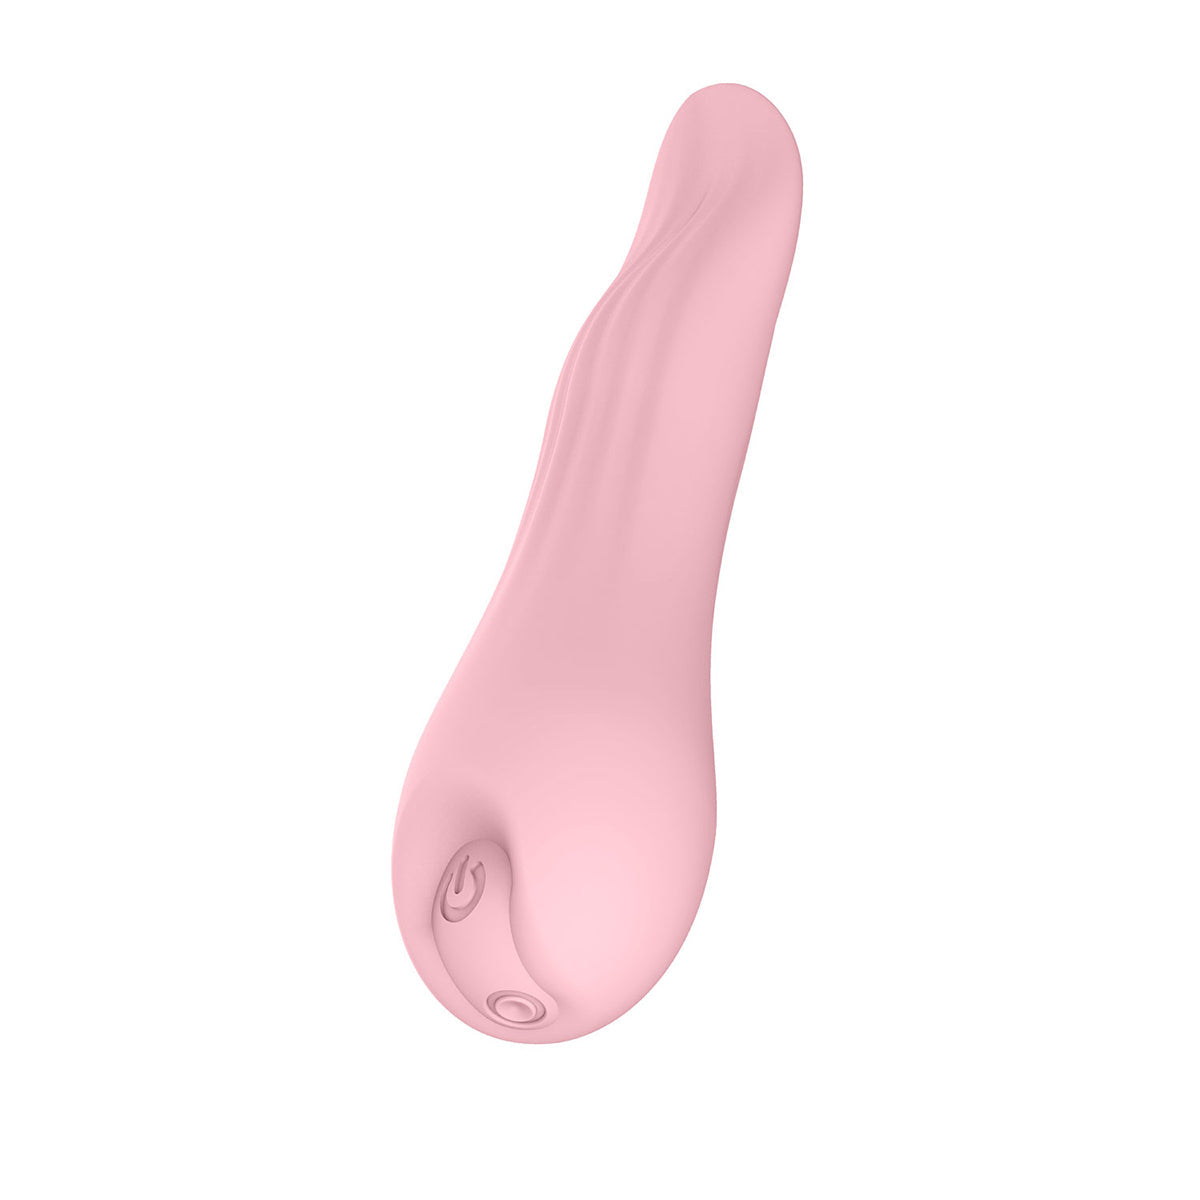 Luv Inc. Tongue Vibrator Pink